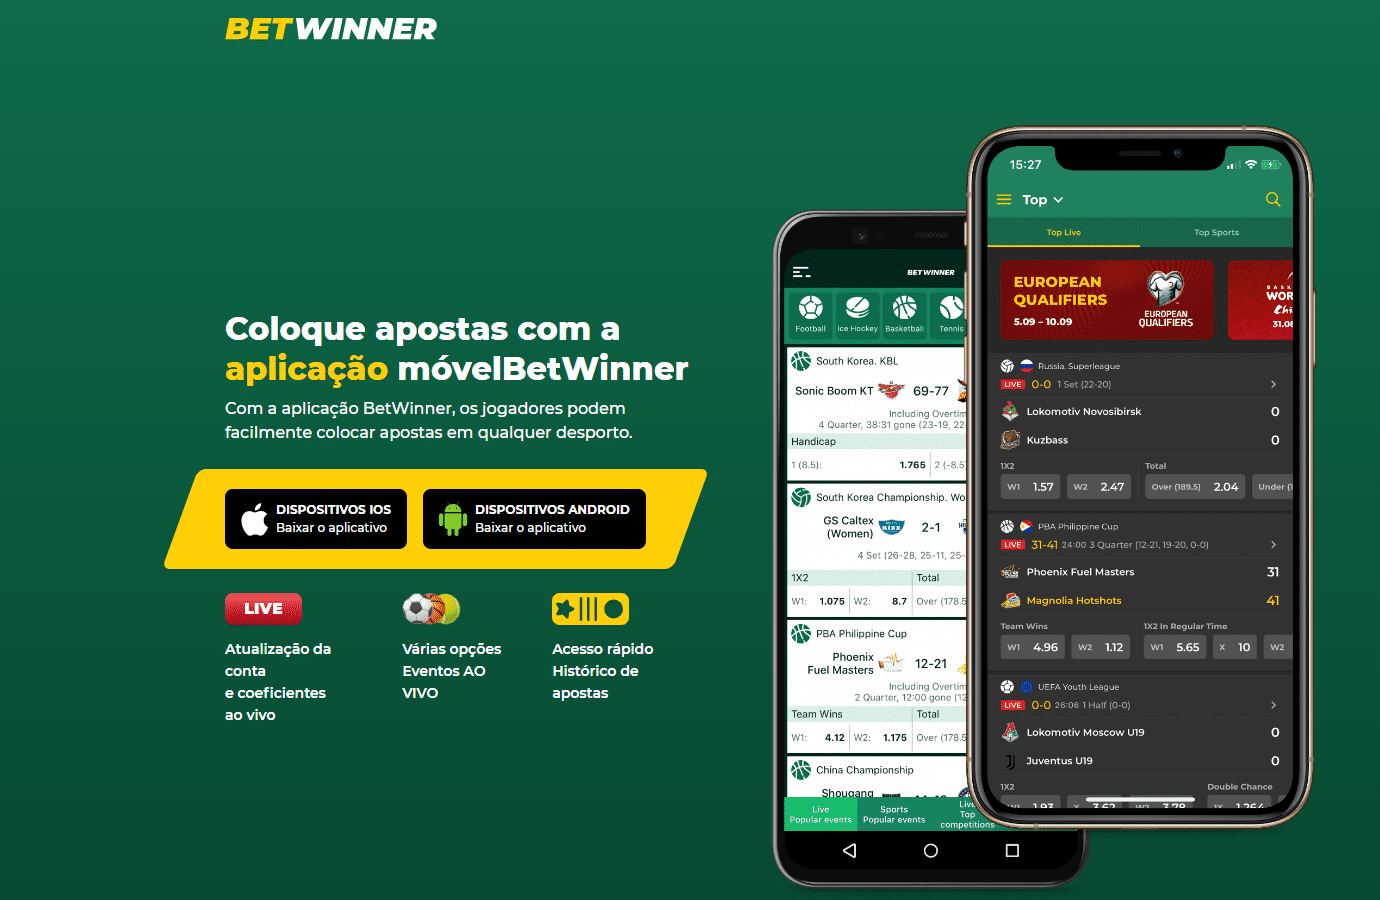 BetWinner mobile app or website?